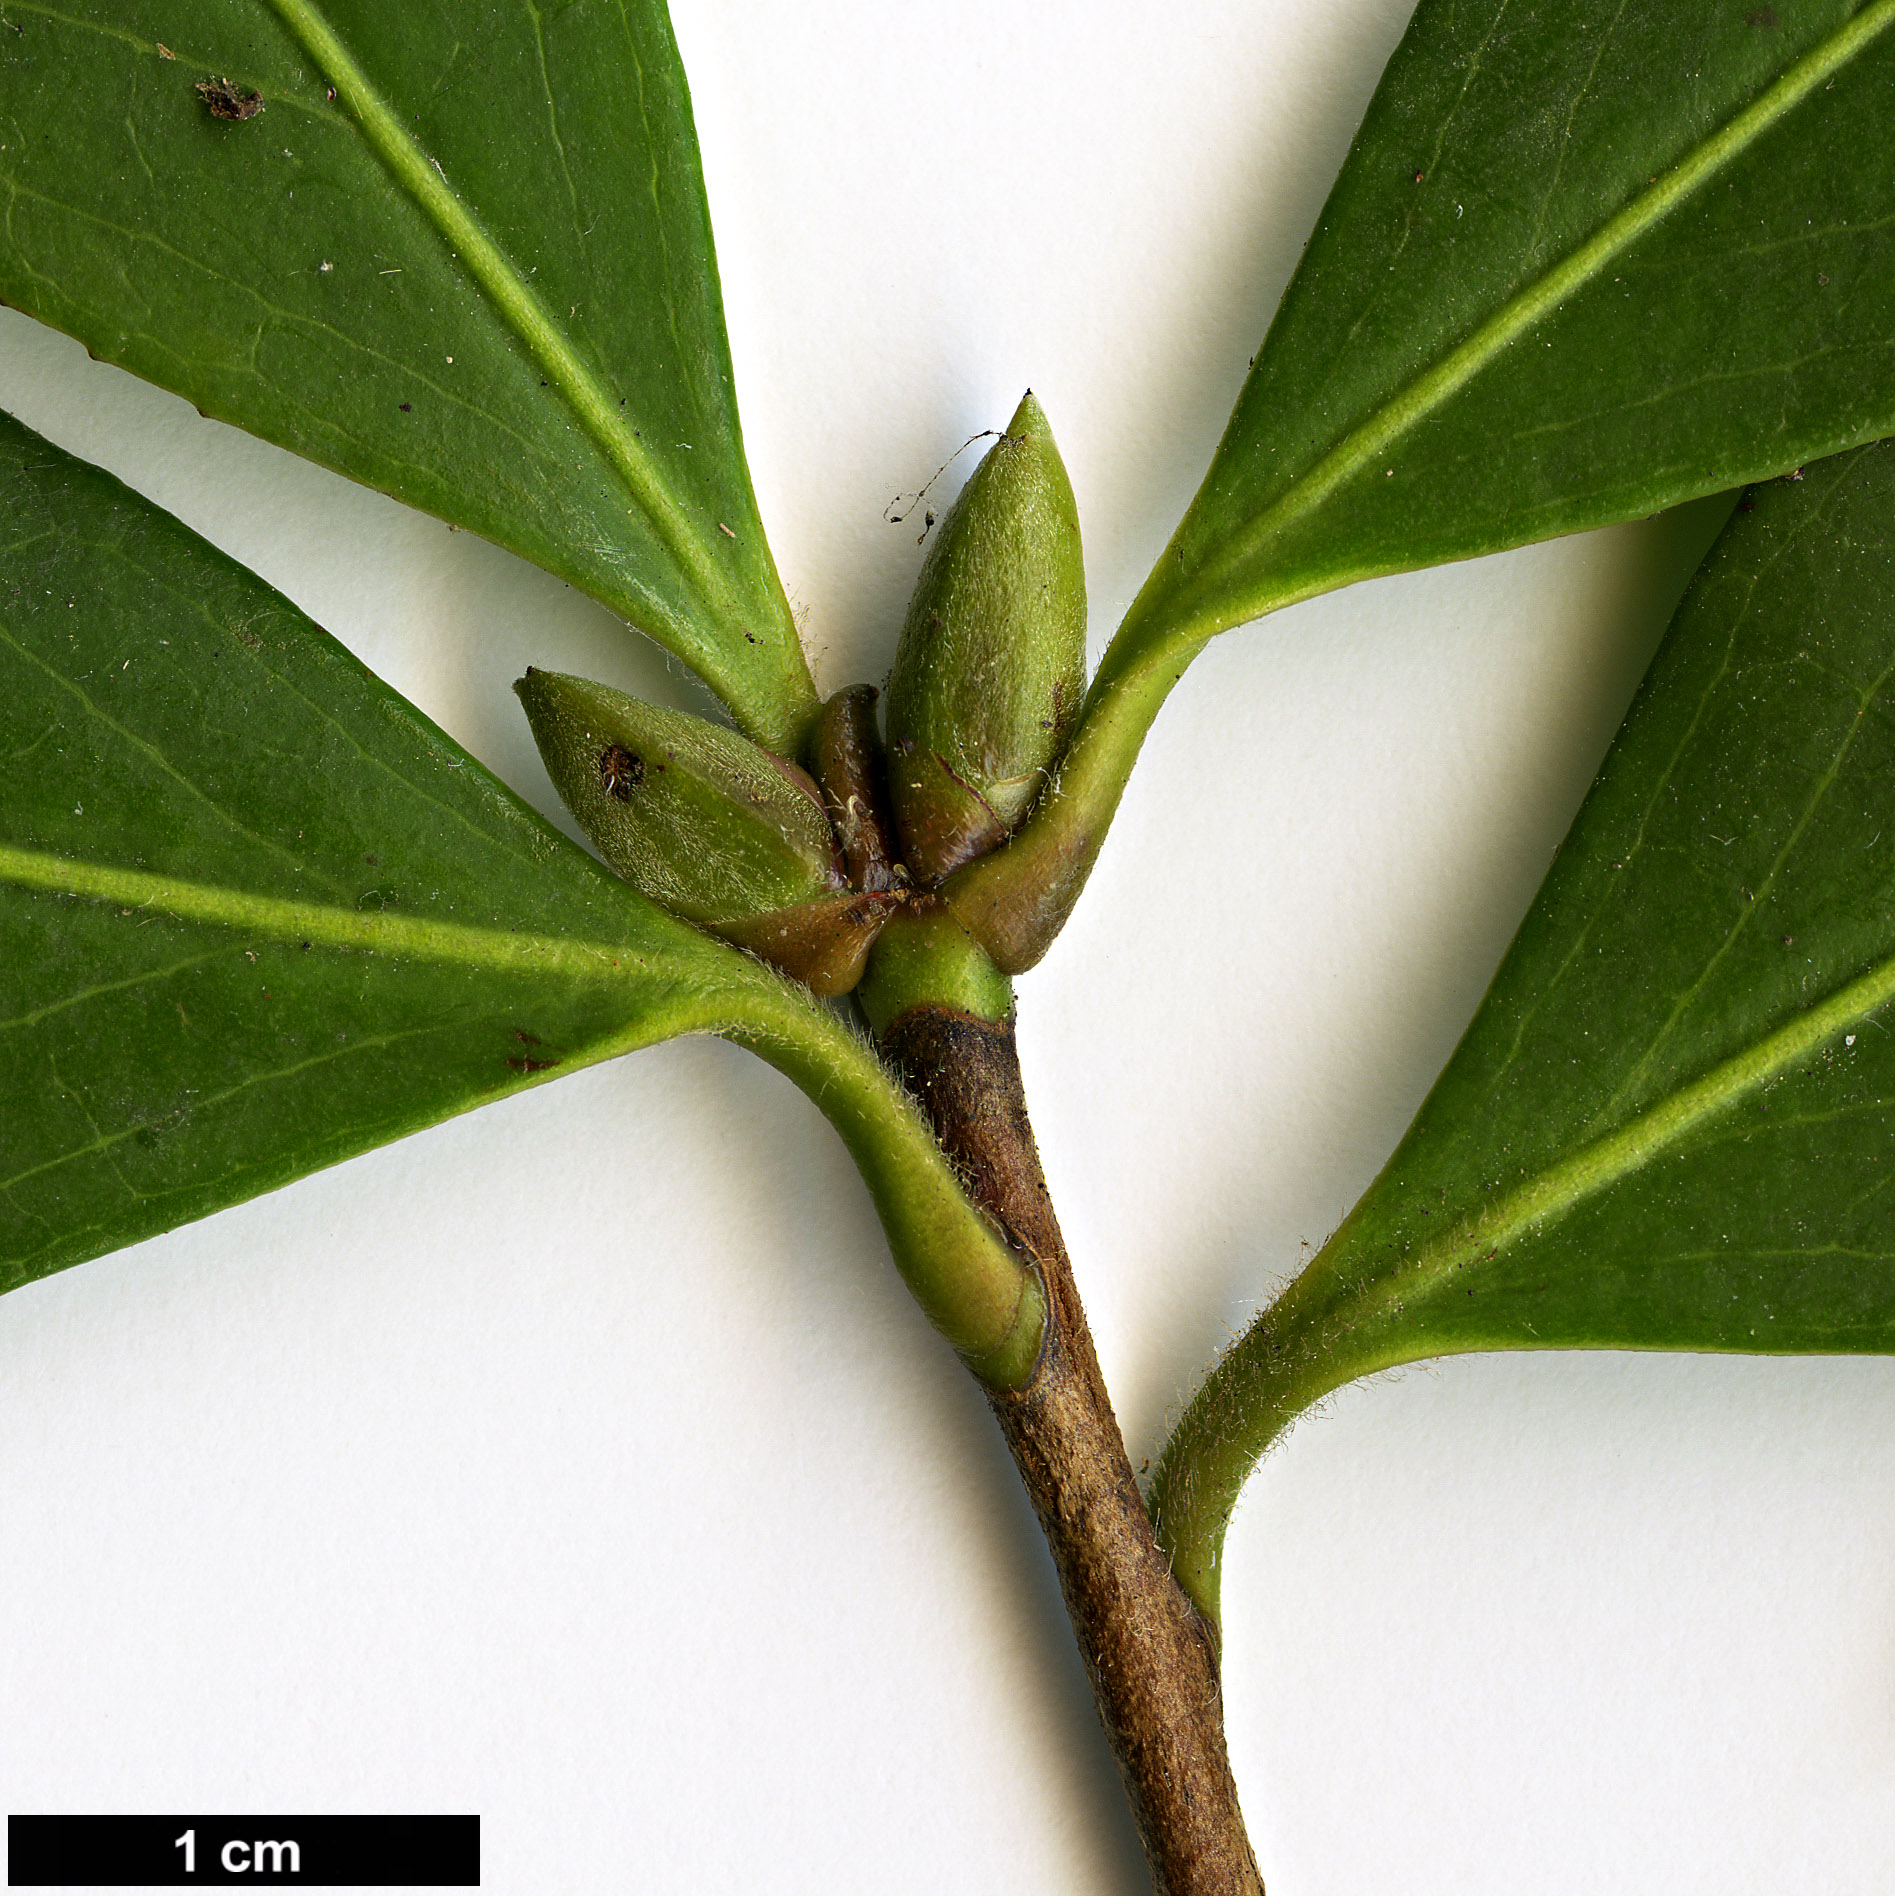 High resolution image: Family: Theaceae - Genus: Camellia - Taxon: ×williamsii (C.japonica × C.saluenensis)